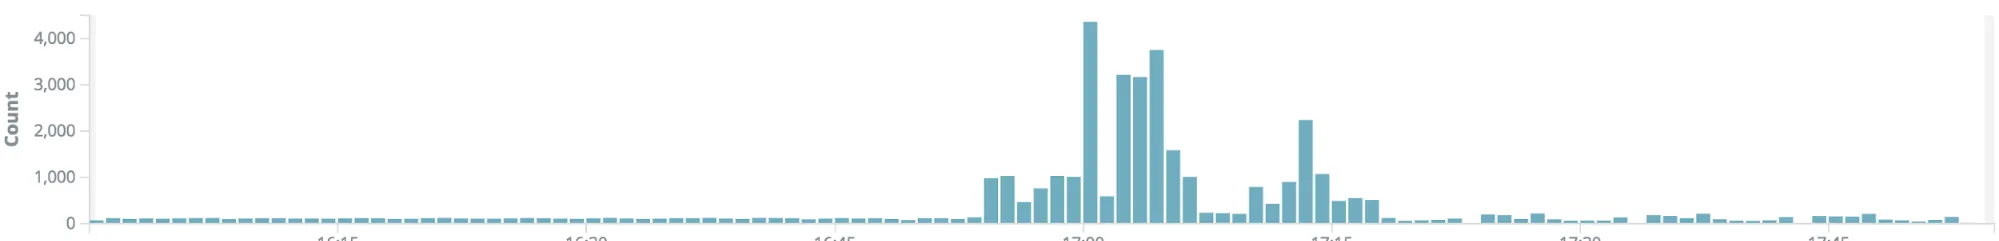 Storm blog data graph